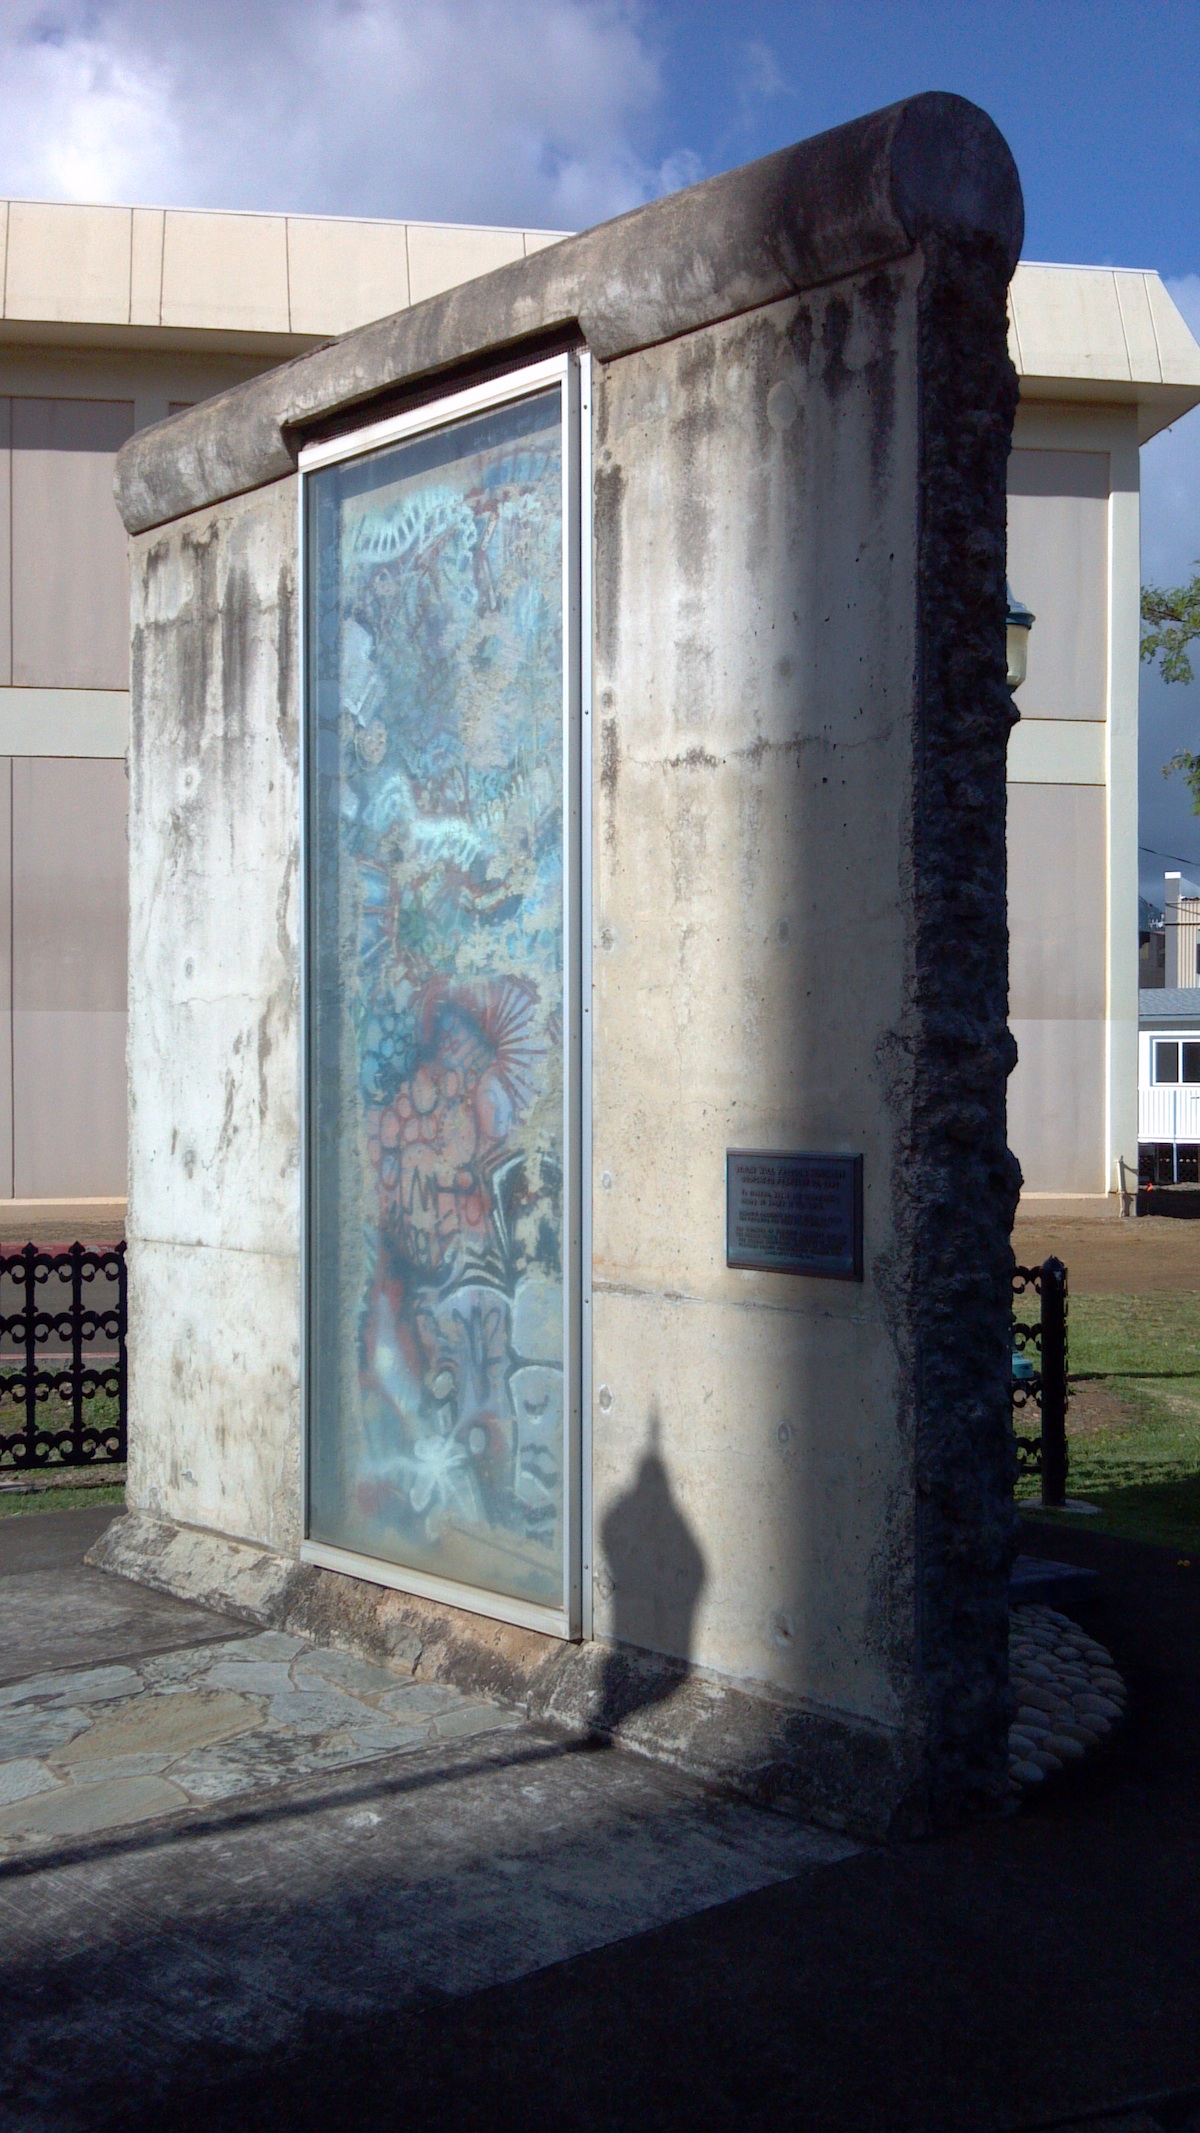 Berlin Wall in Hawaii